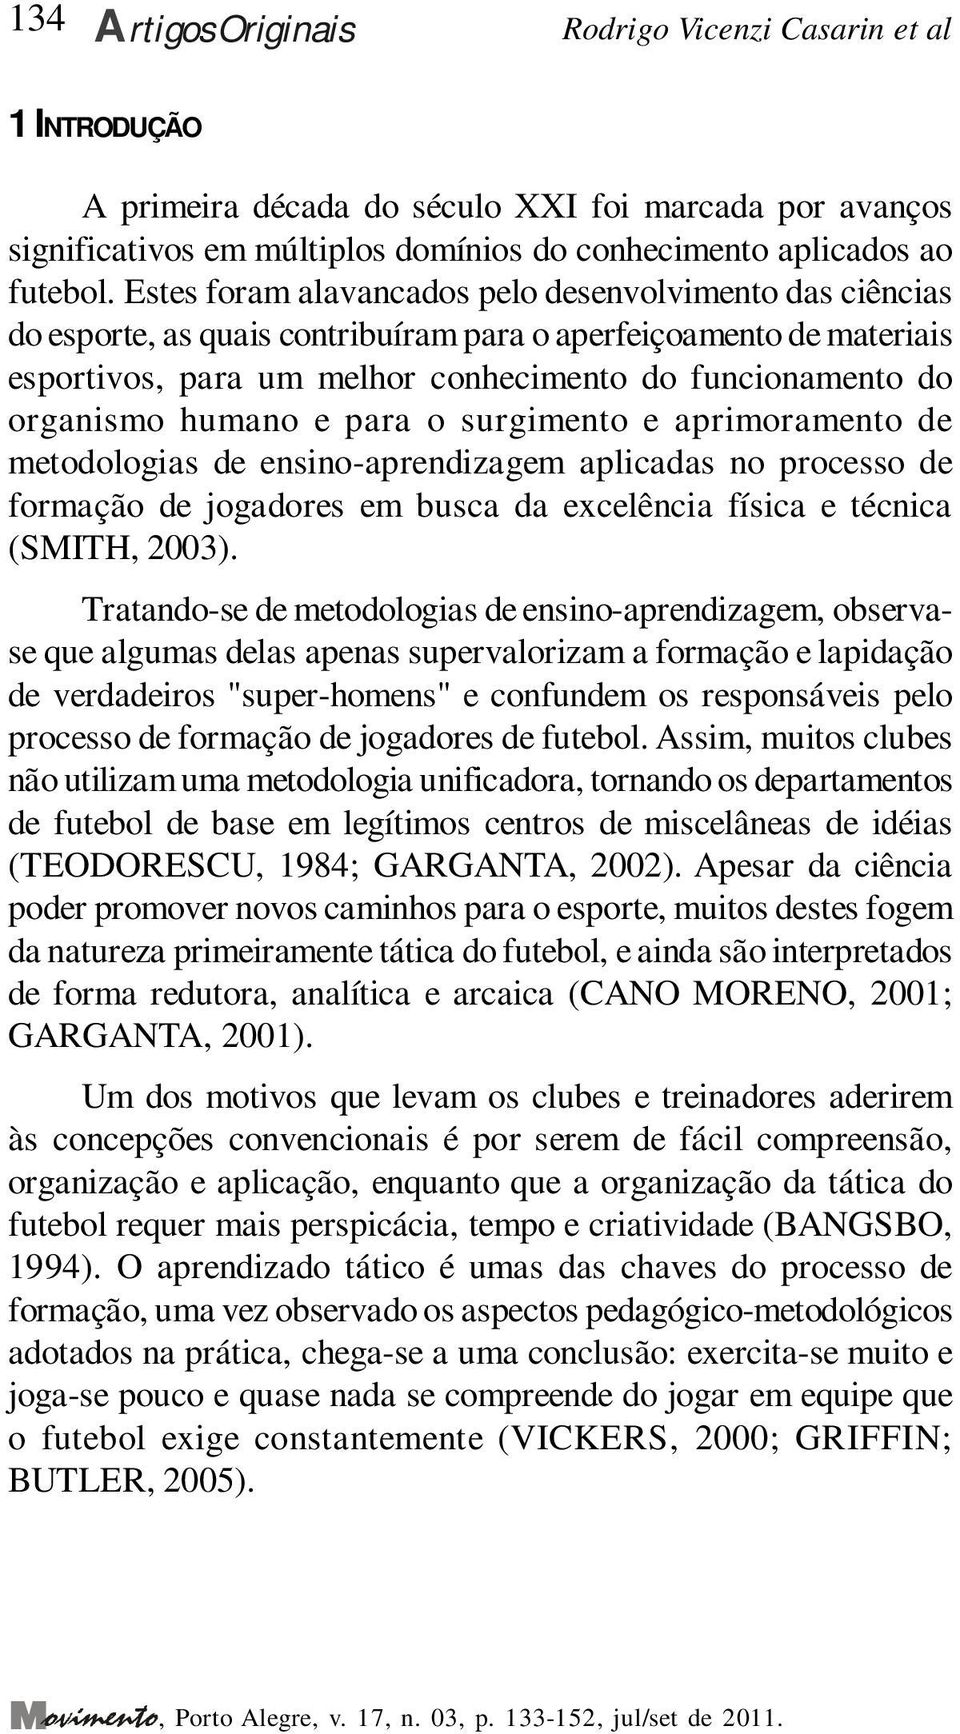 humano e para o surgimento e aprimoramento de metodologias de ensino-aprendizagem aplicadas no processo de formação de jogadores em busca da excelência física e técnica (SMITH, 2003).